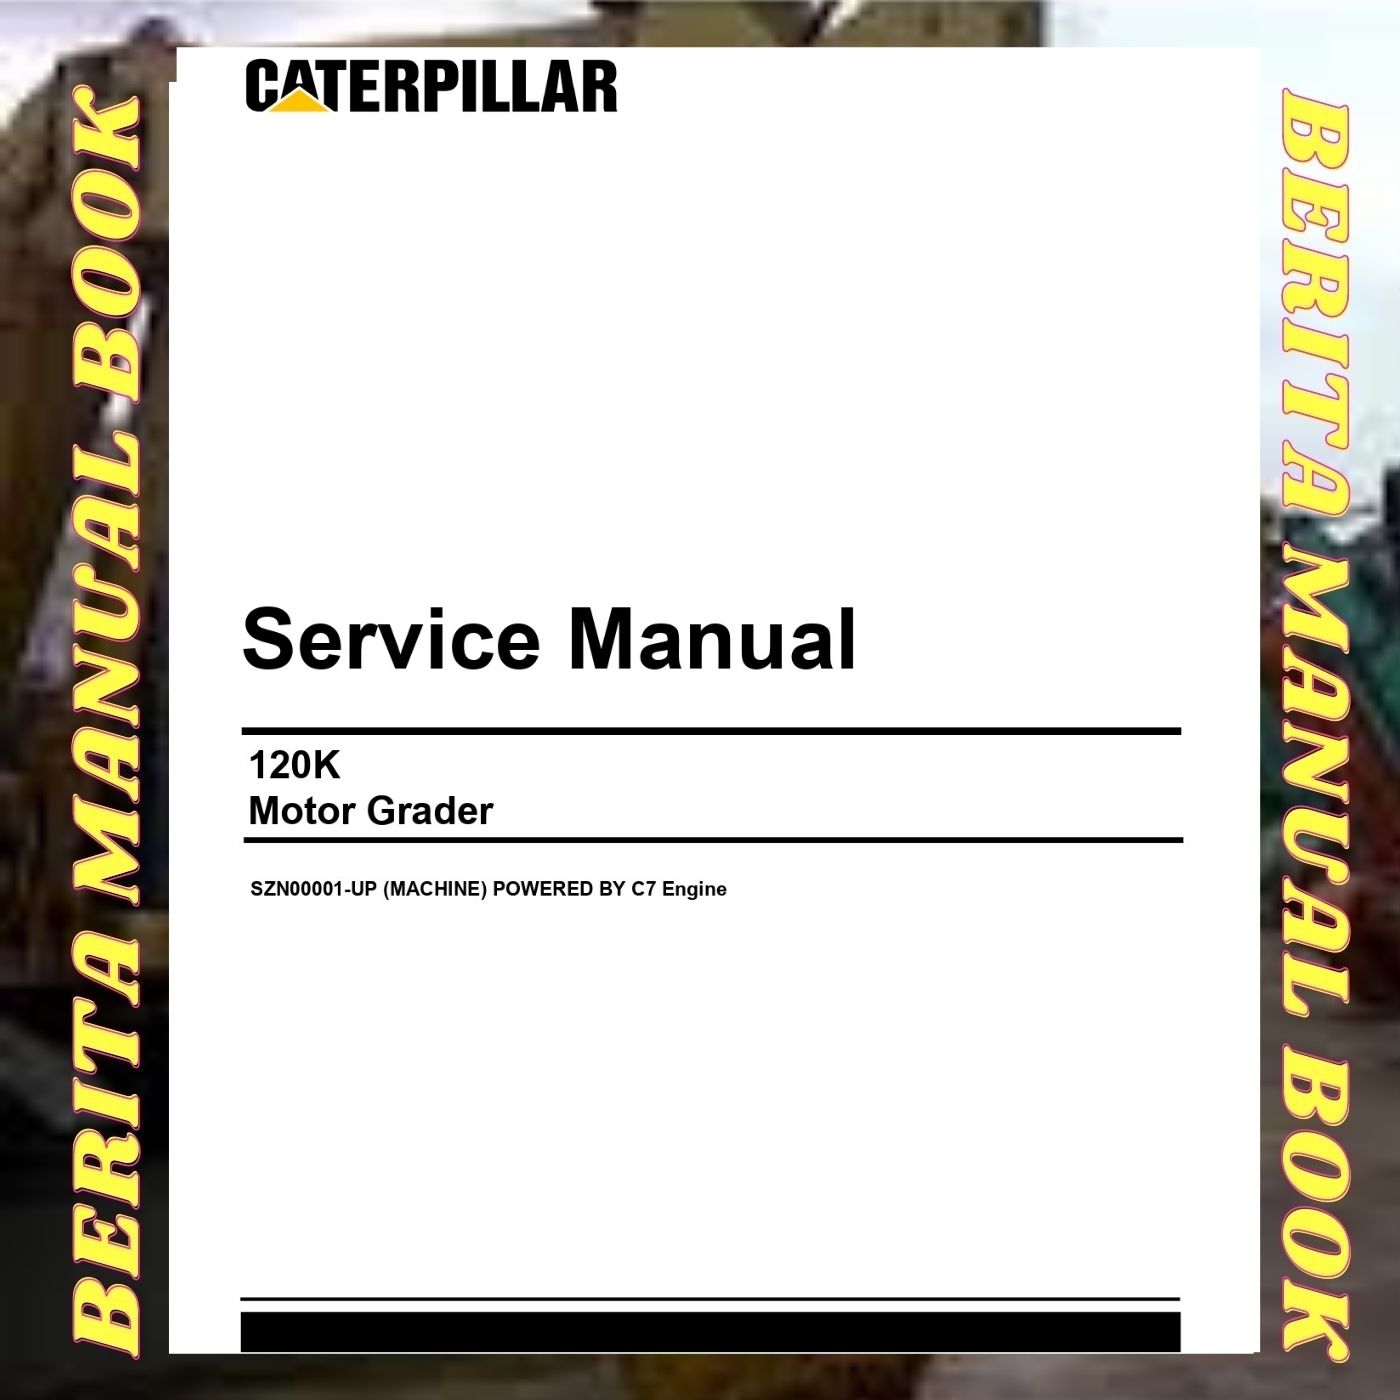 Service Manual Caterpillar motor grader Cat 120k